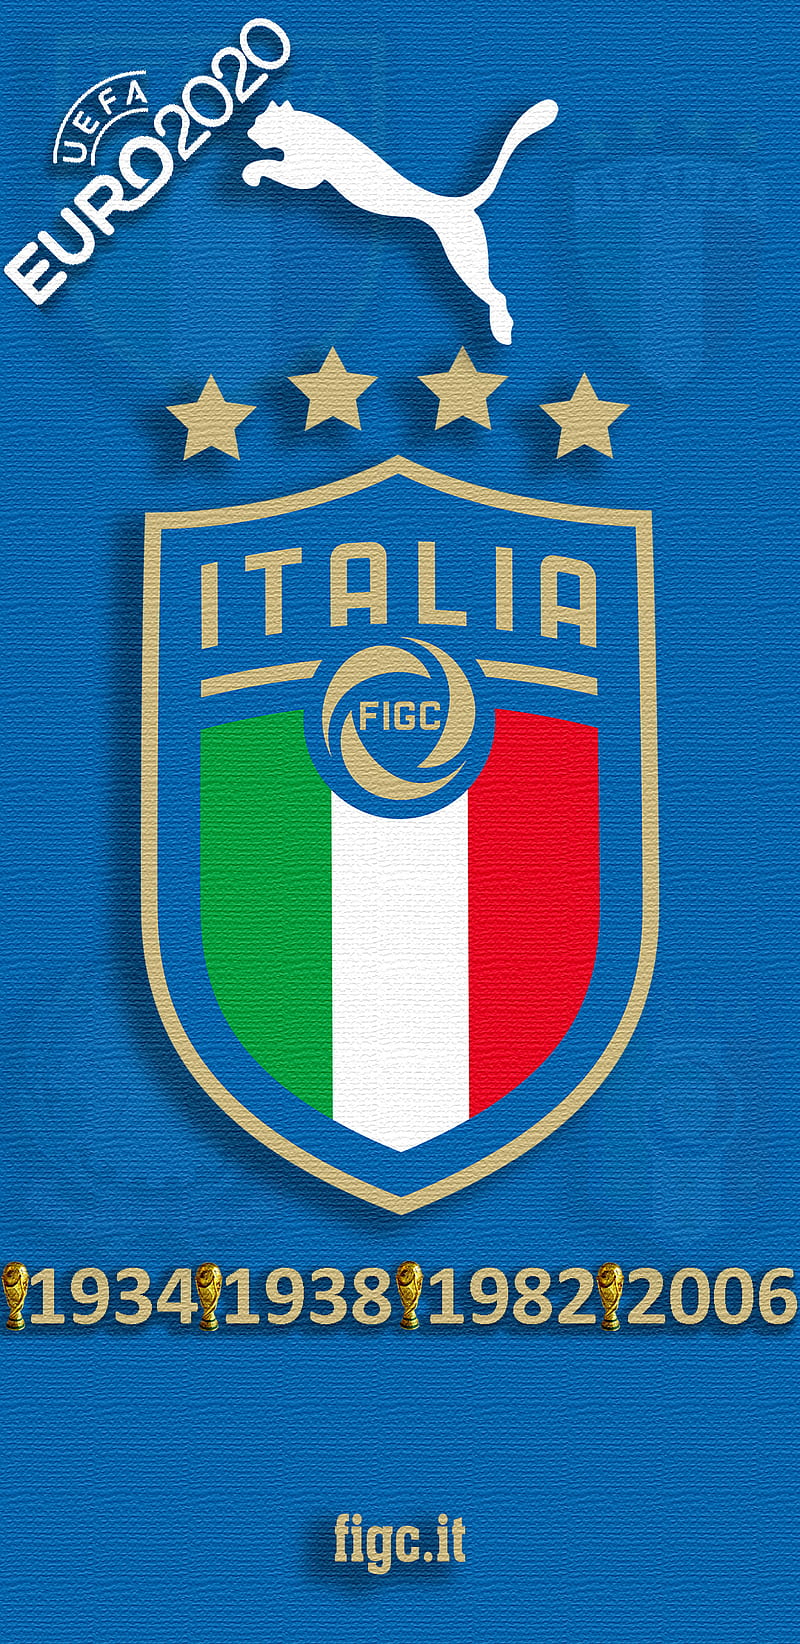 ITALY 2020 NOTE 9, euro 2020, fifa, figc, gli azzurri, ita, la squadra azzurra, puma, samsung galaxy note 9, HD phone wallpaper